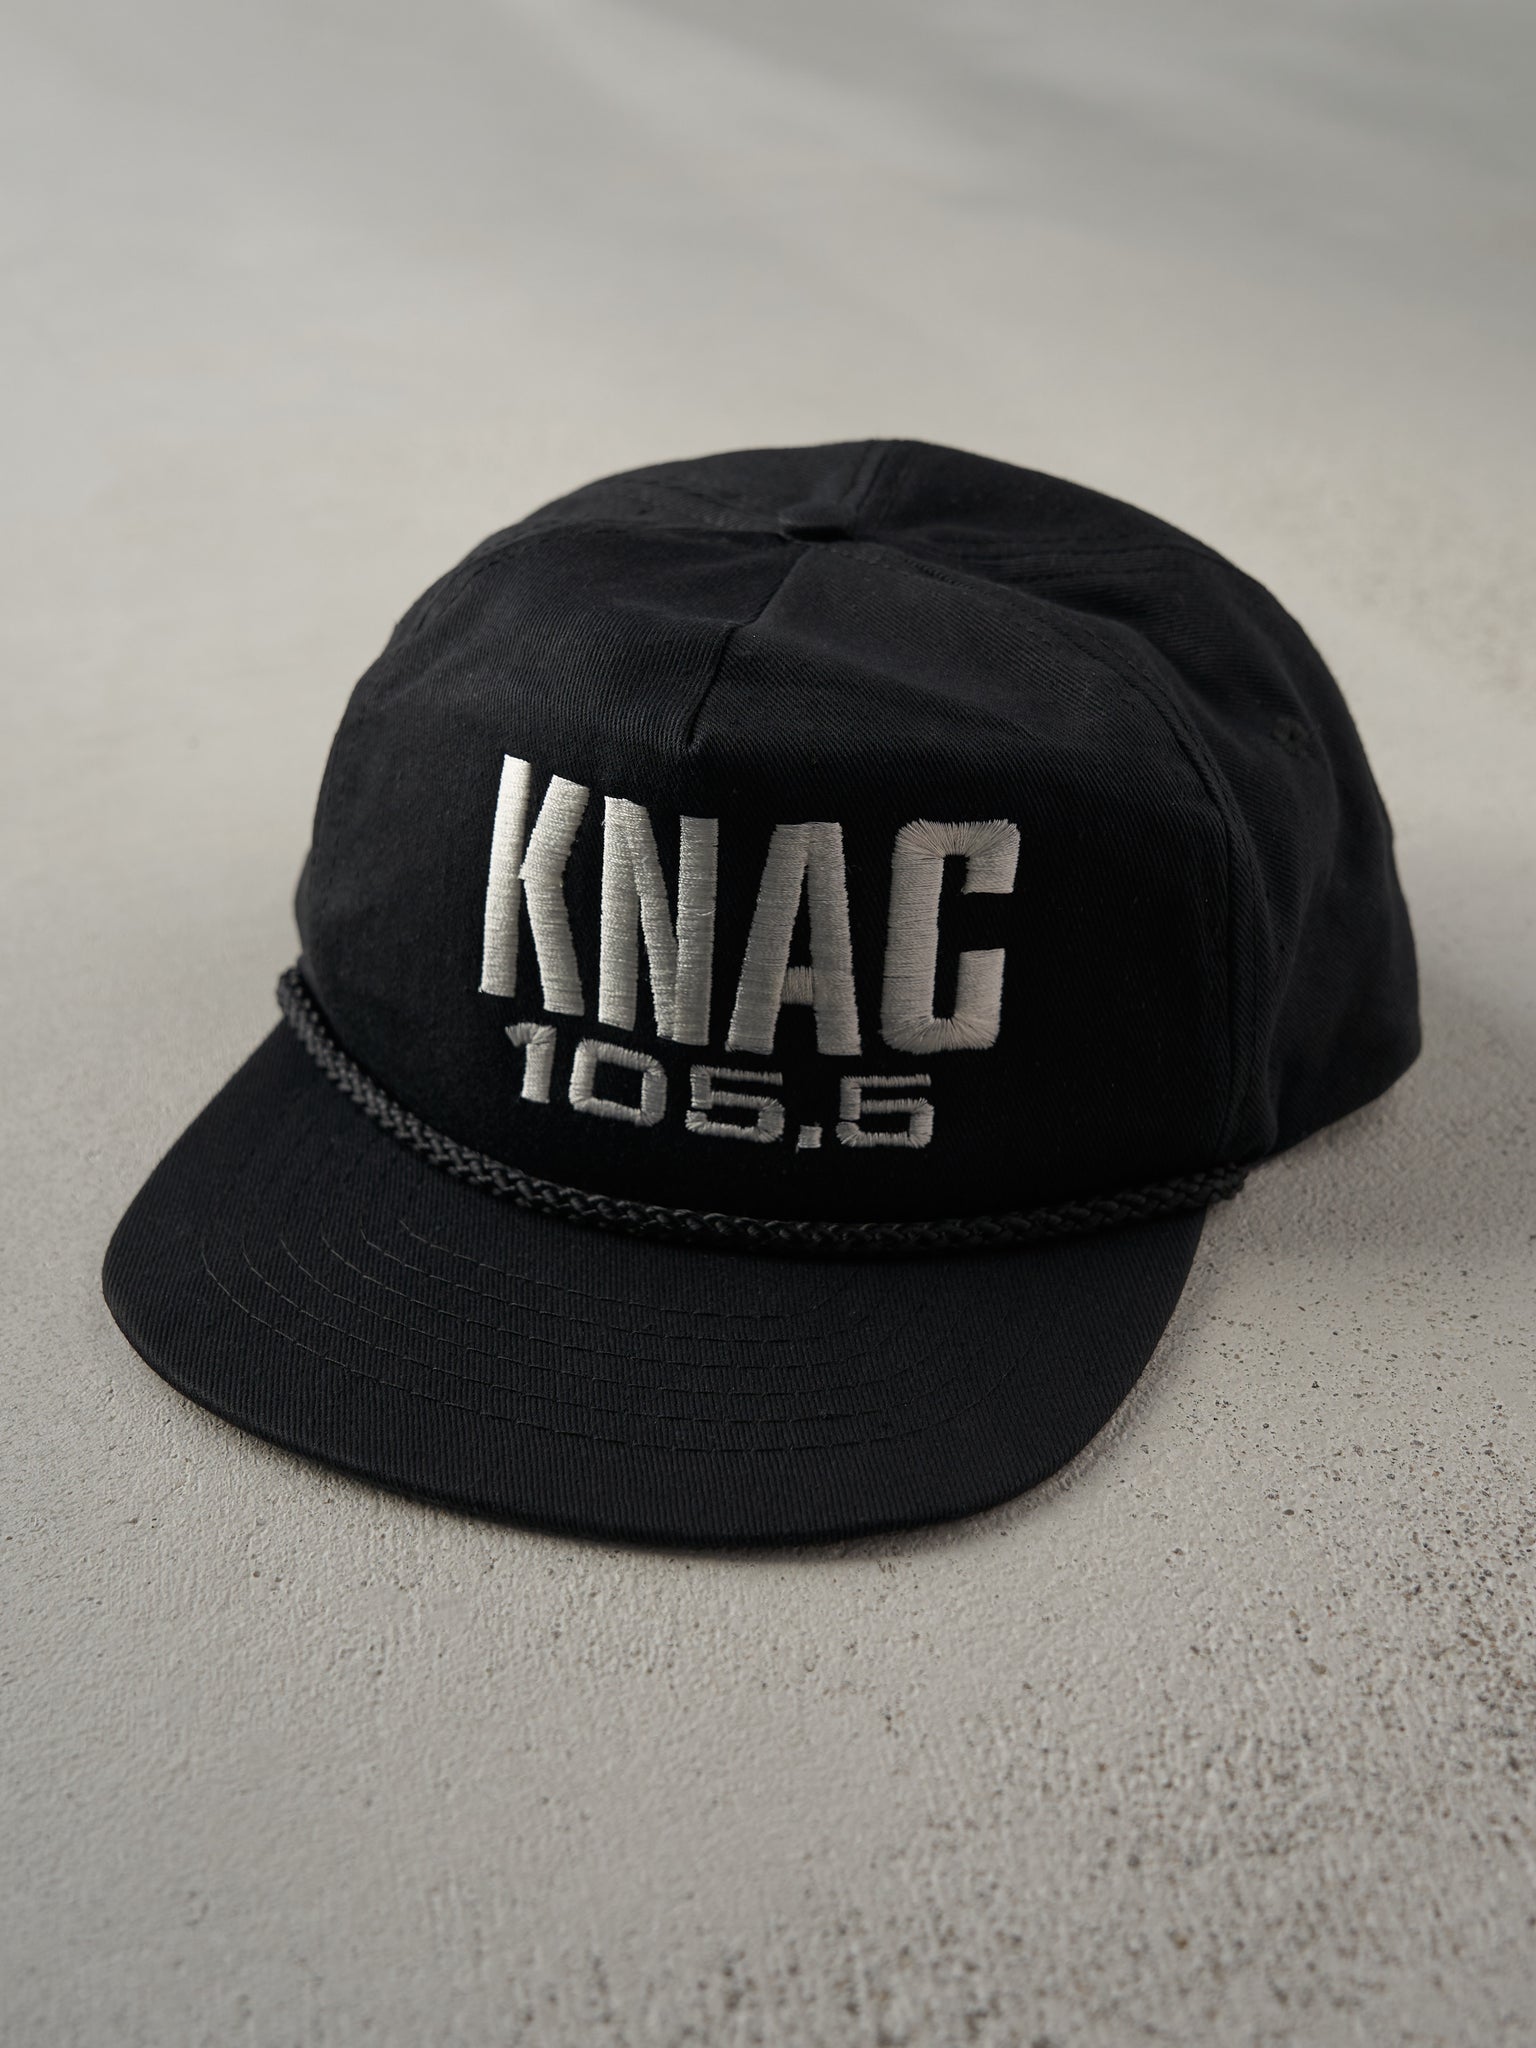 Vintage 80s Black KNAC 105.5 Radio Embroidered Snapback Hat